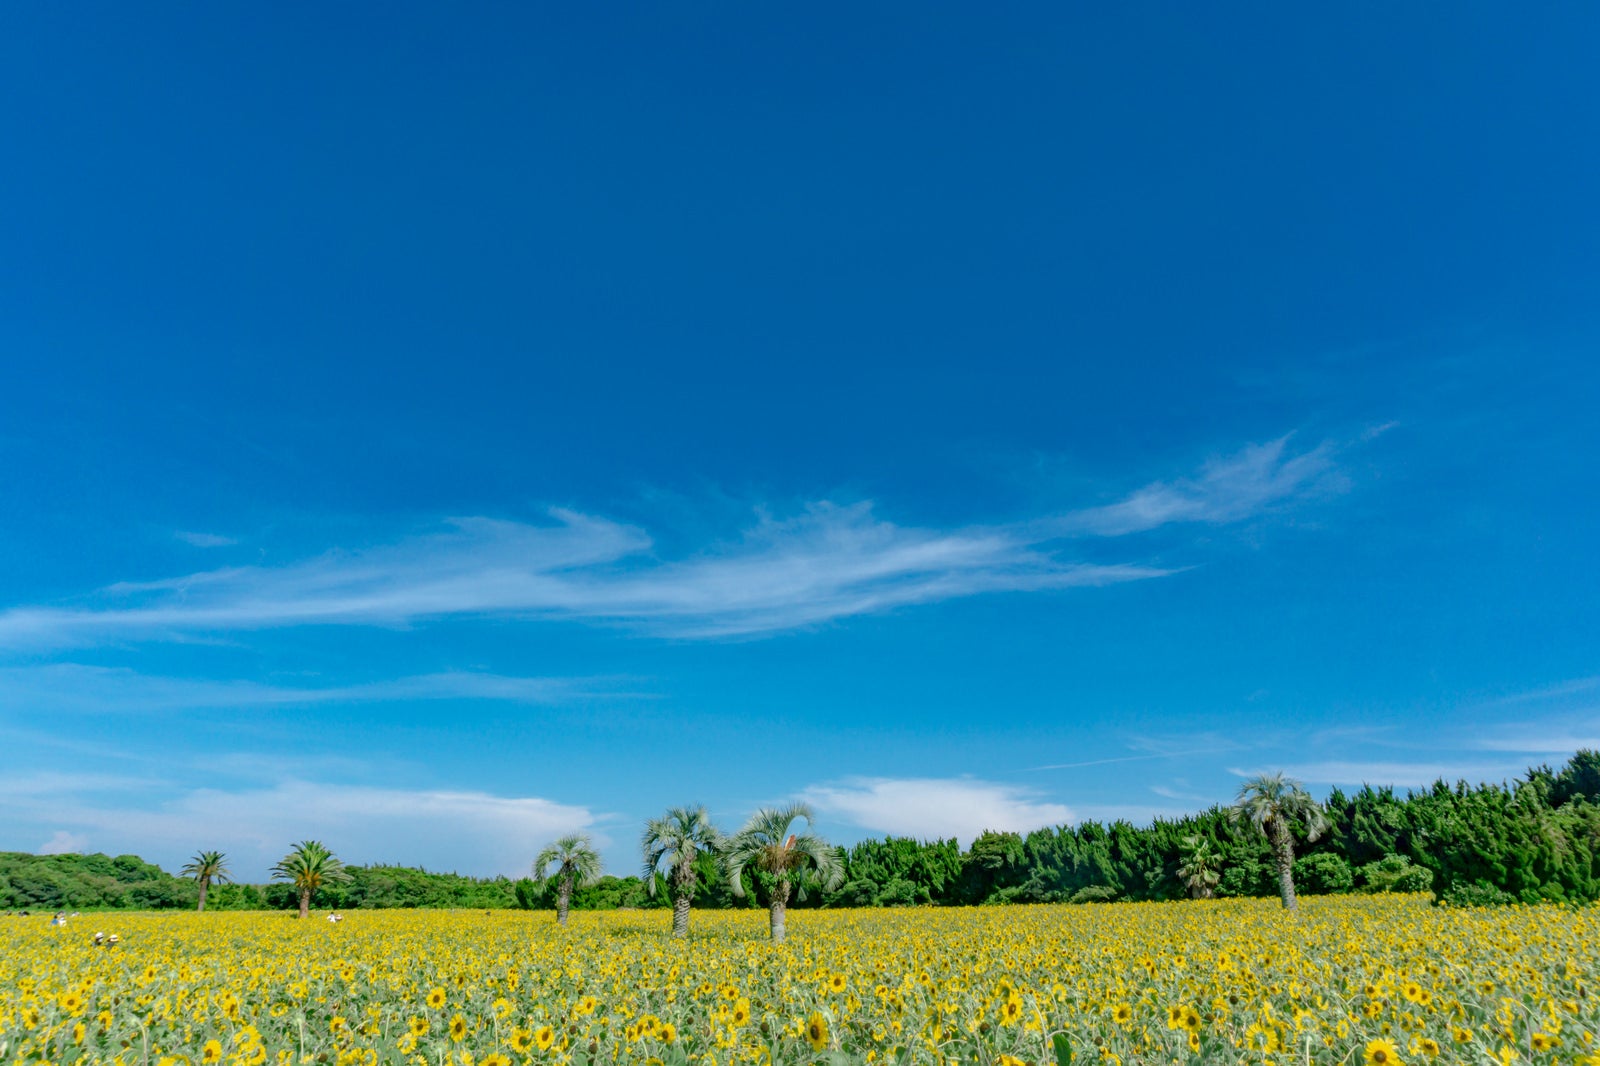 「青い空と黄色い絨毯が広がる夏の景色」の写真